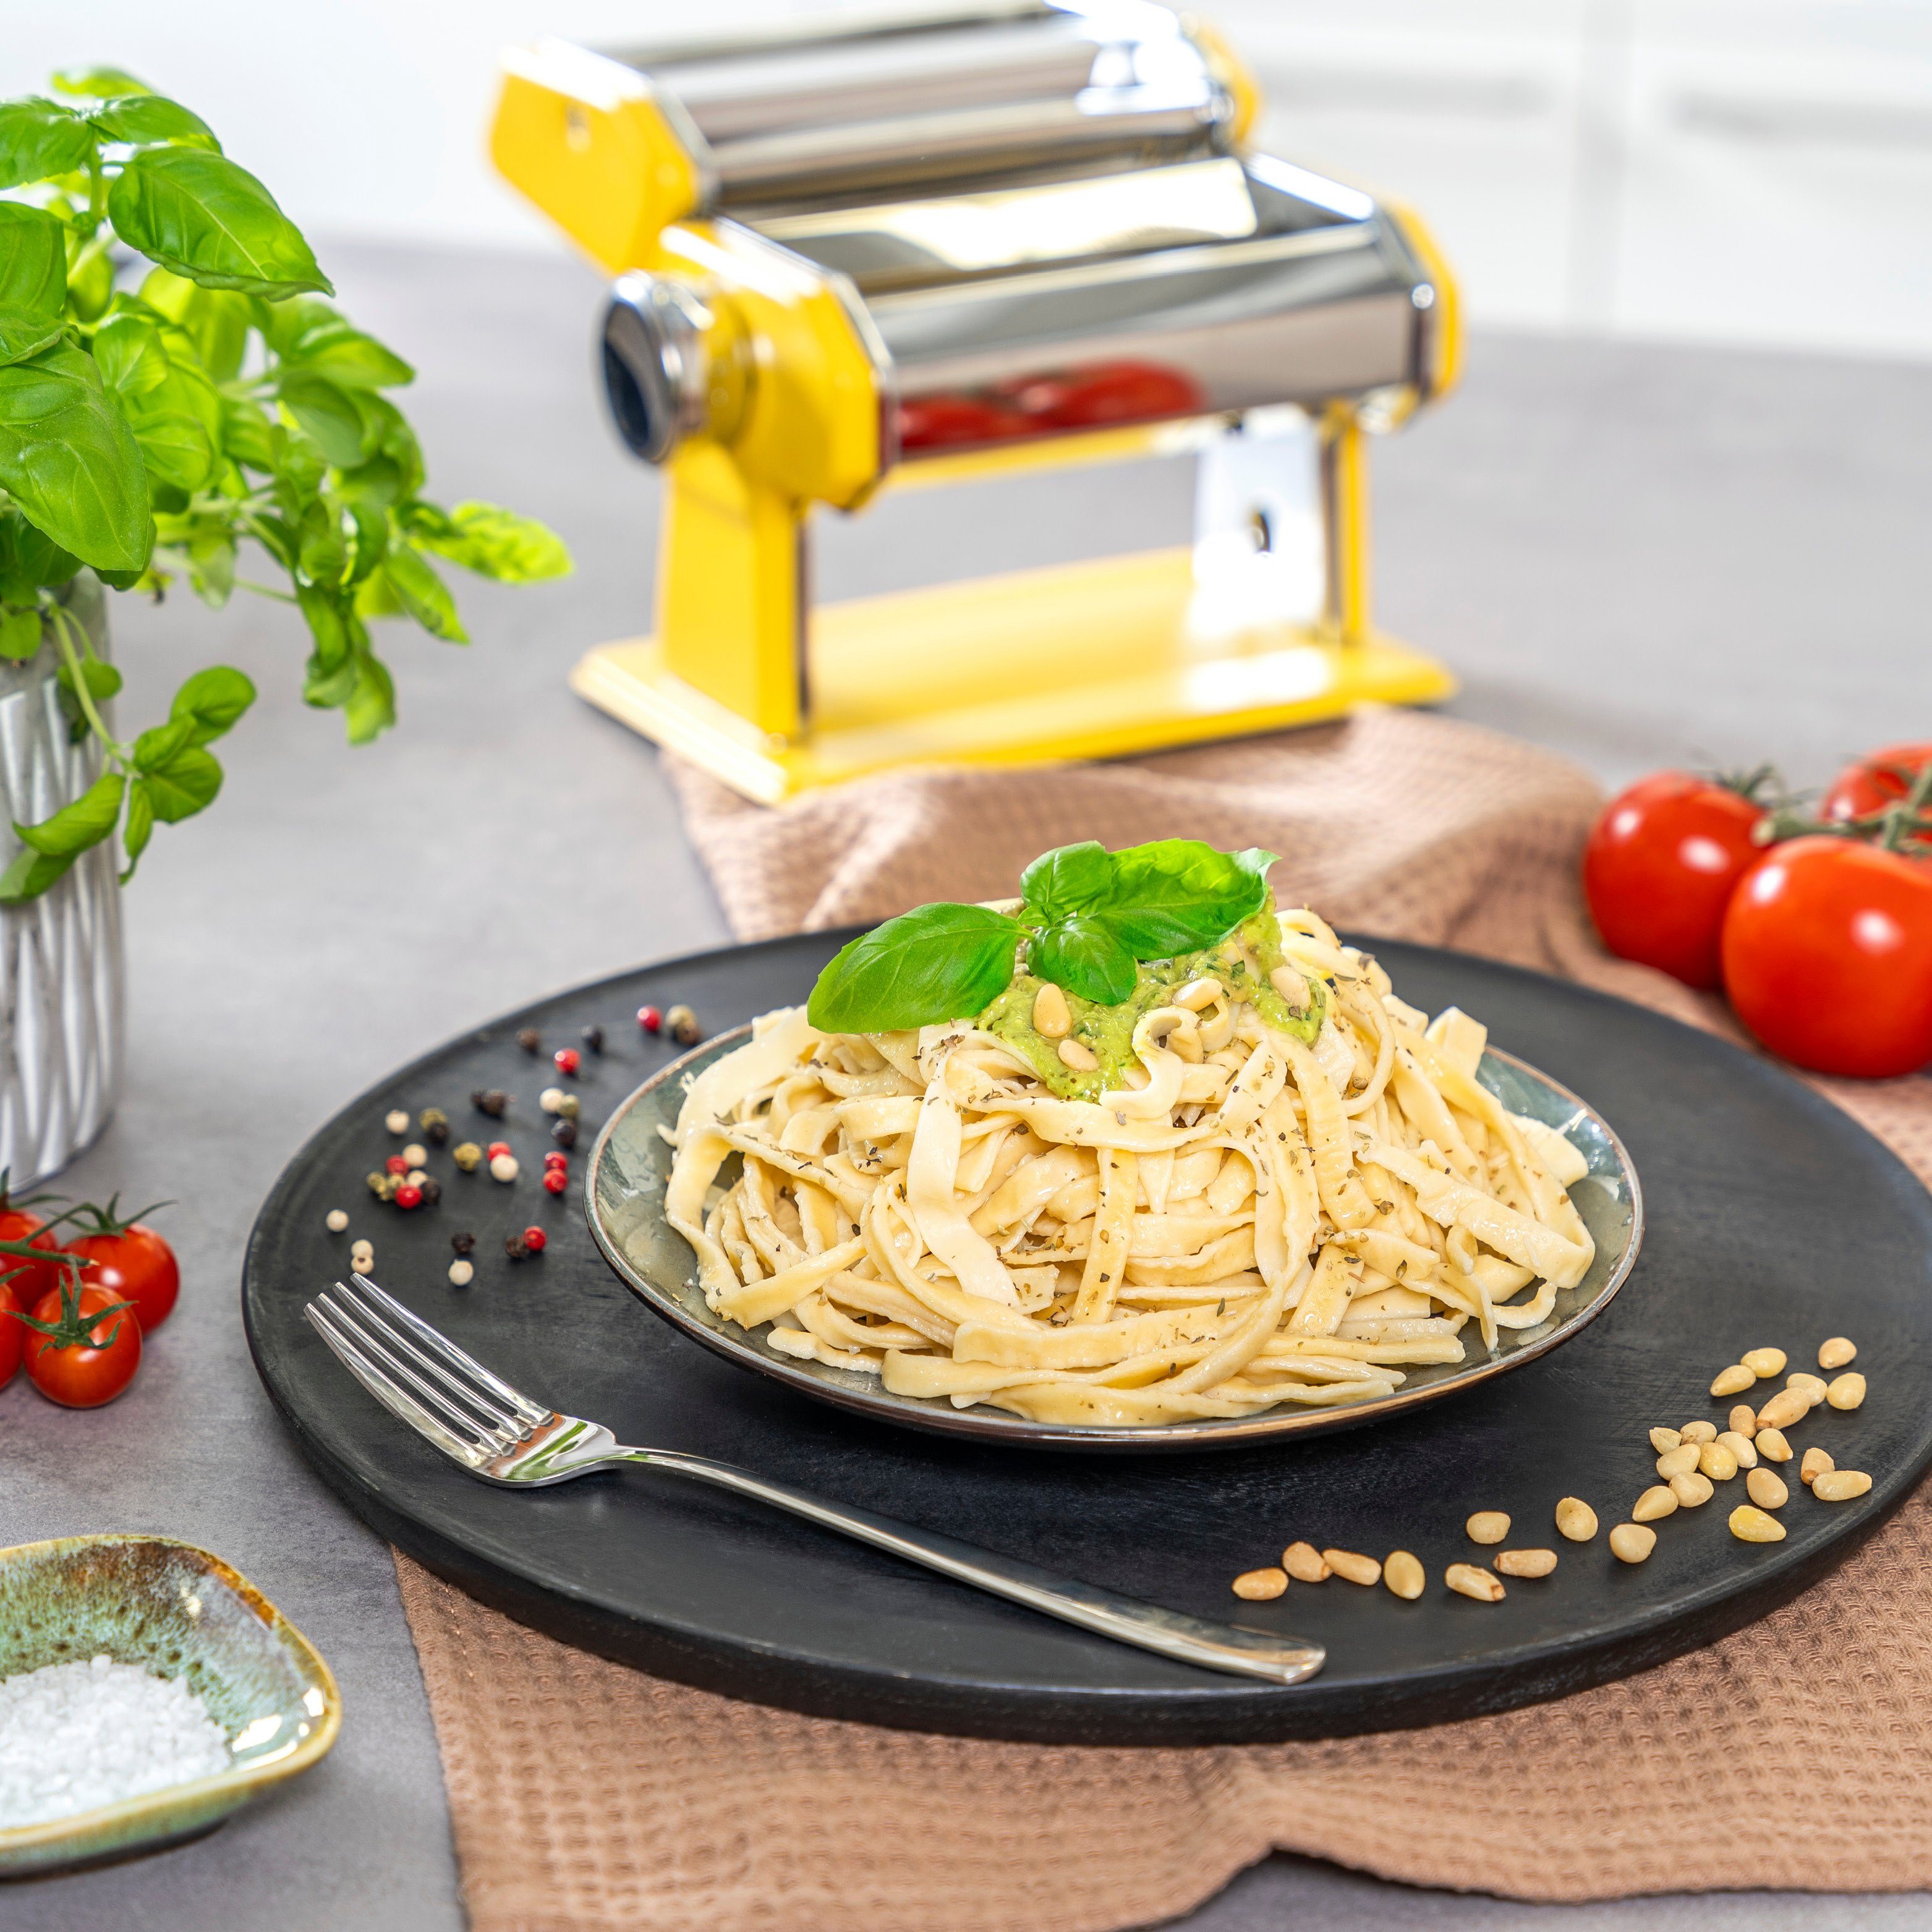 für 7 Spaghetti, Pasta und Stufen, Set, Lasagne Nudeltrocker als inkl. bremermann Nudelmaschine Edelstahl